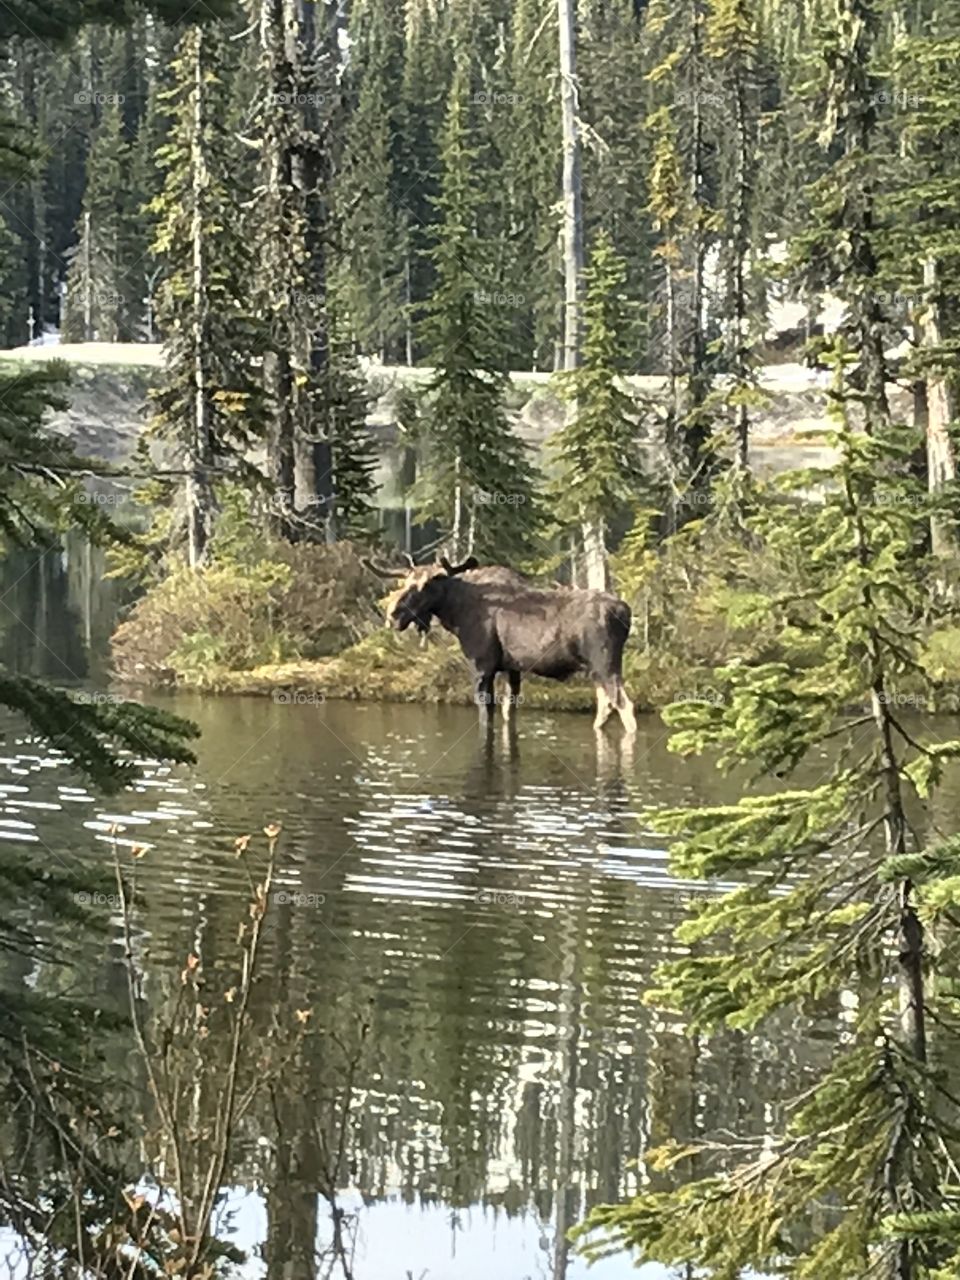 Good Morning Moose!